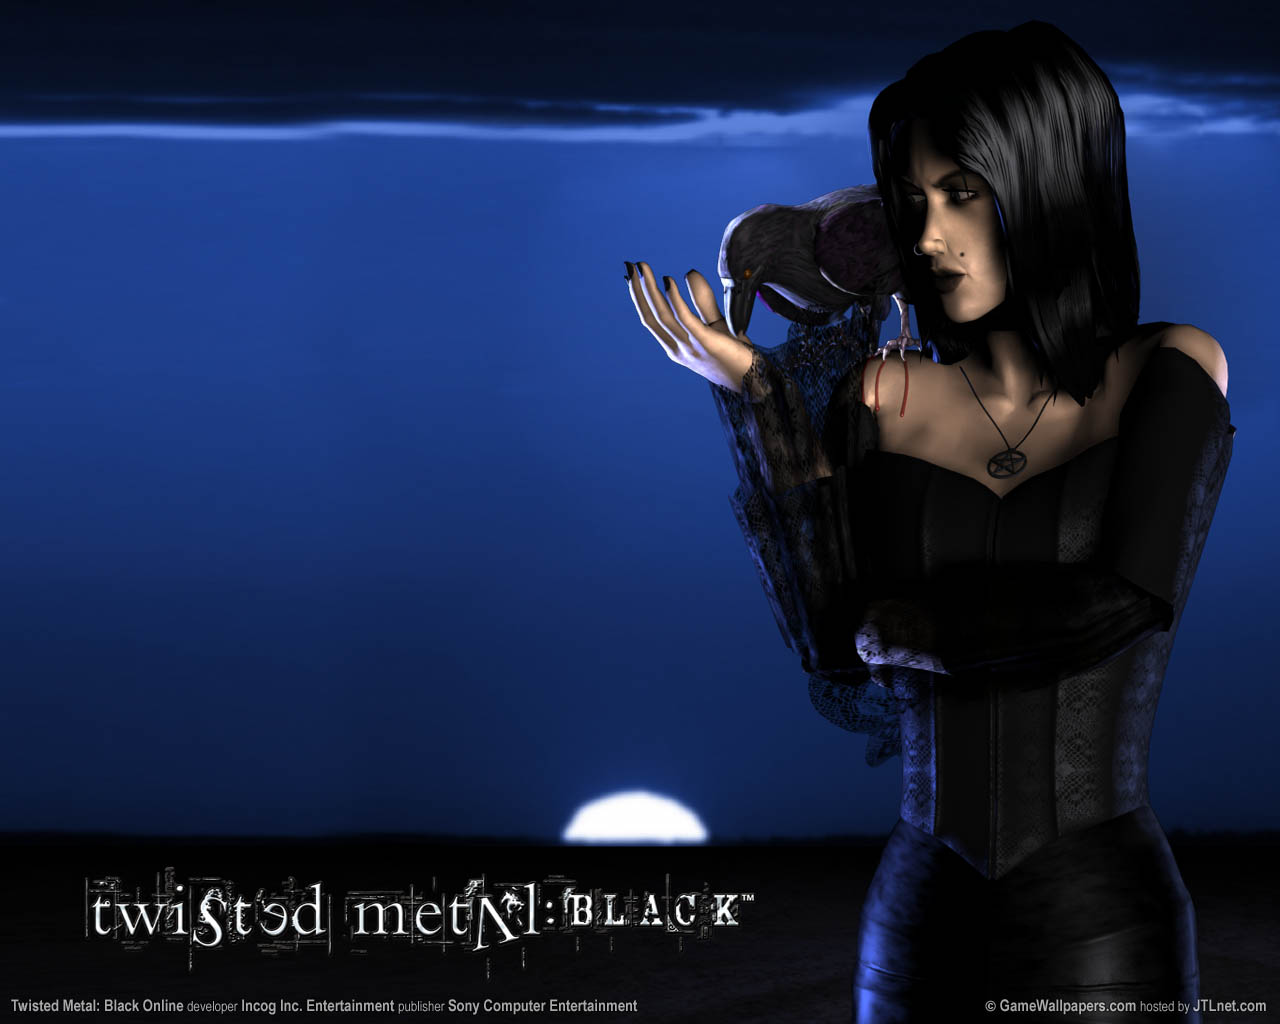 Twisted Metal: Black Online fond d'cran 03 1280x1024